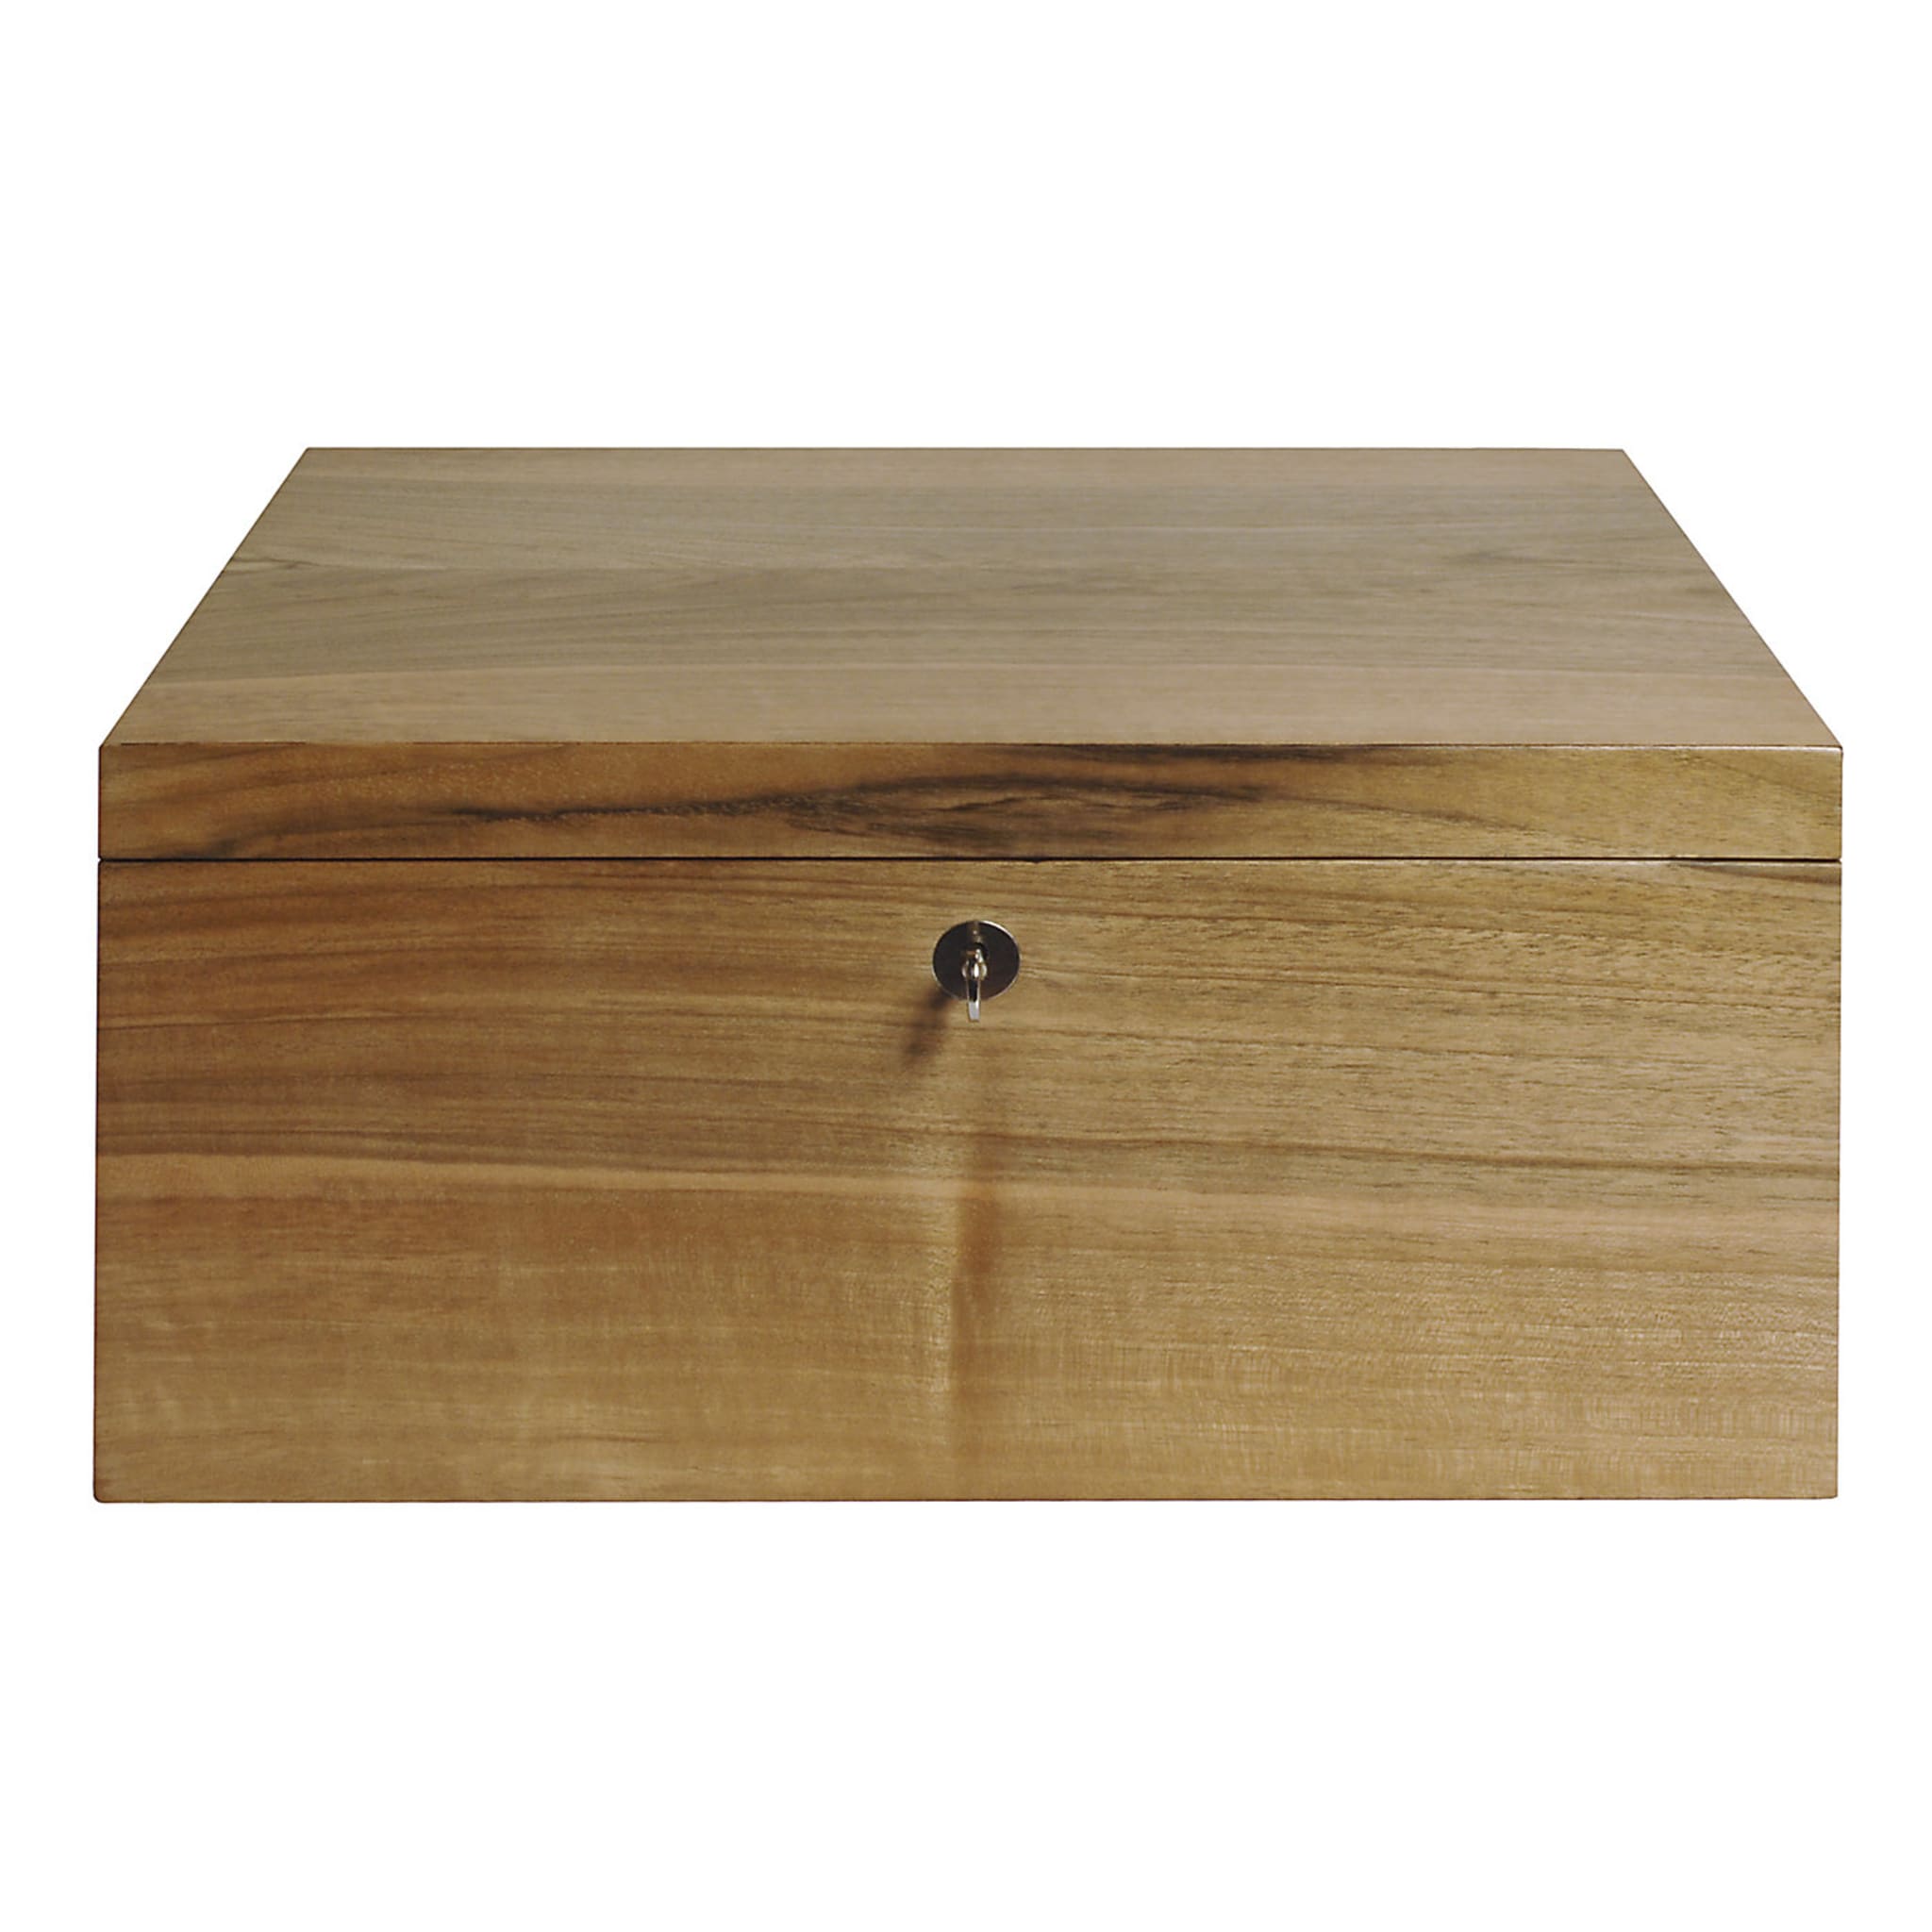 Box in Walnut Wood - Main view